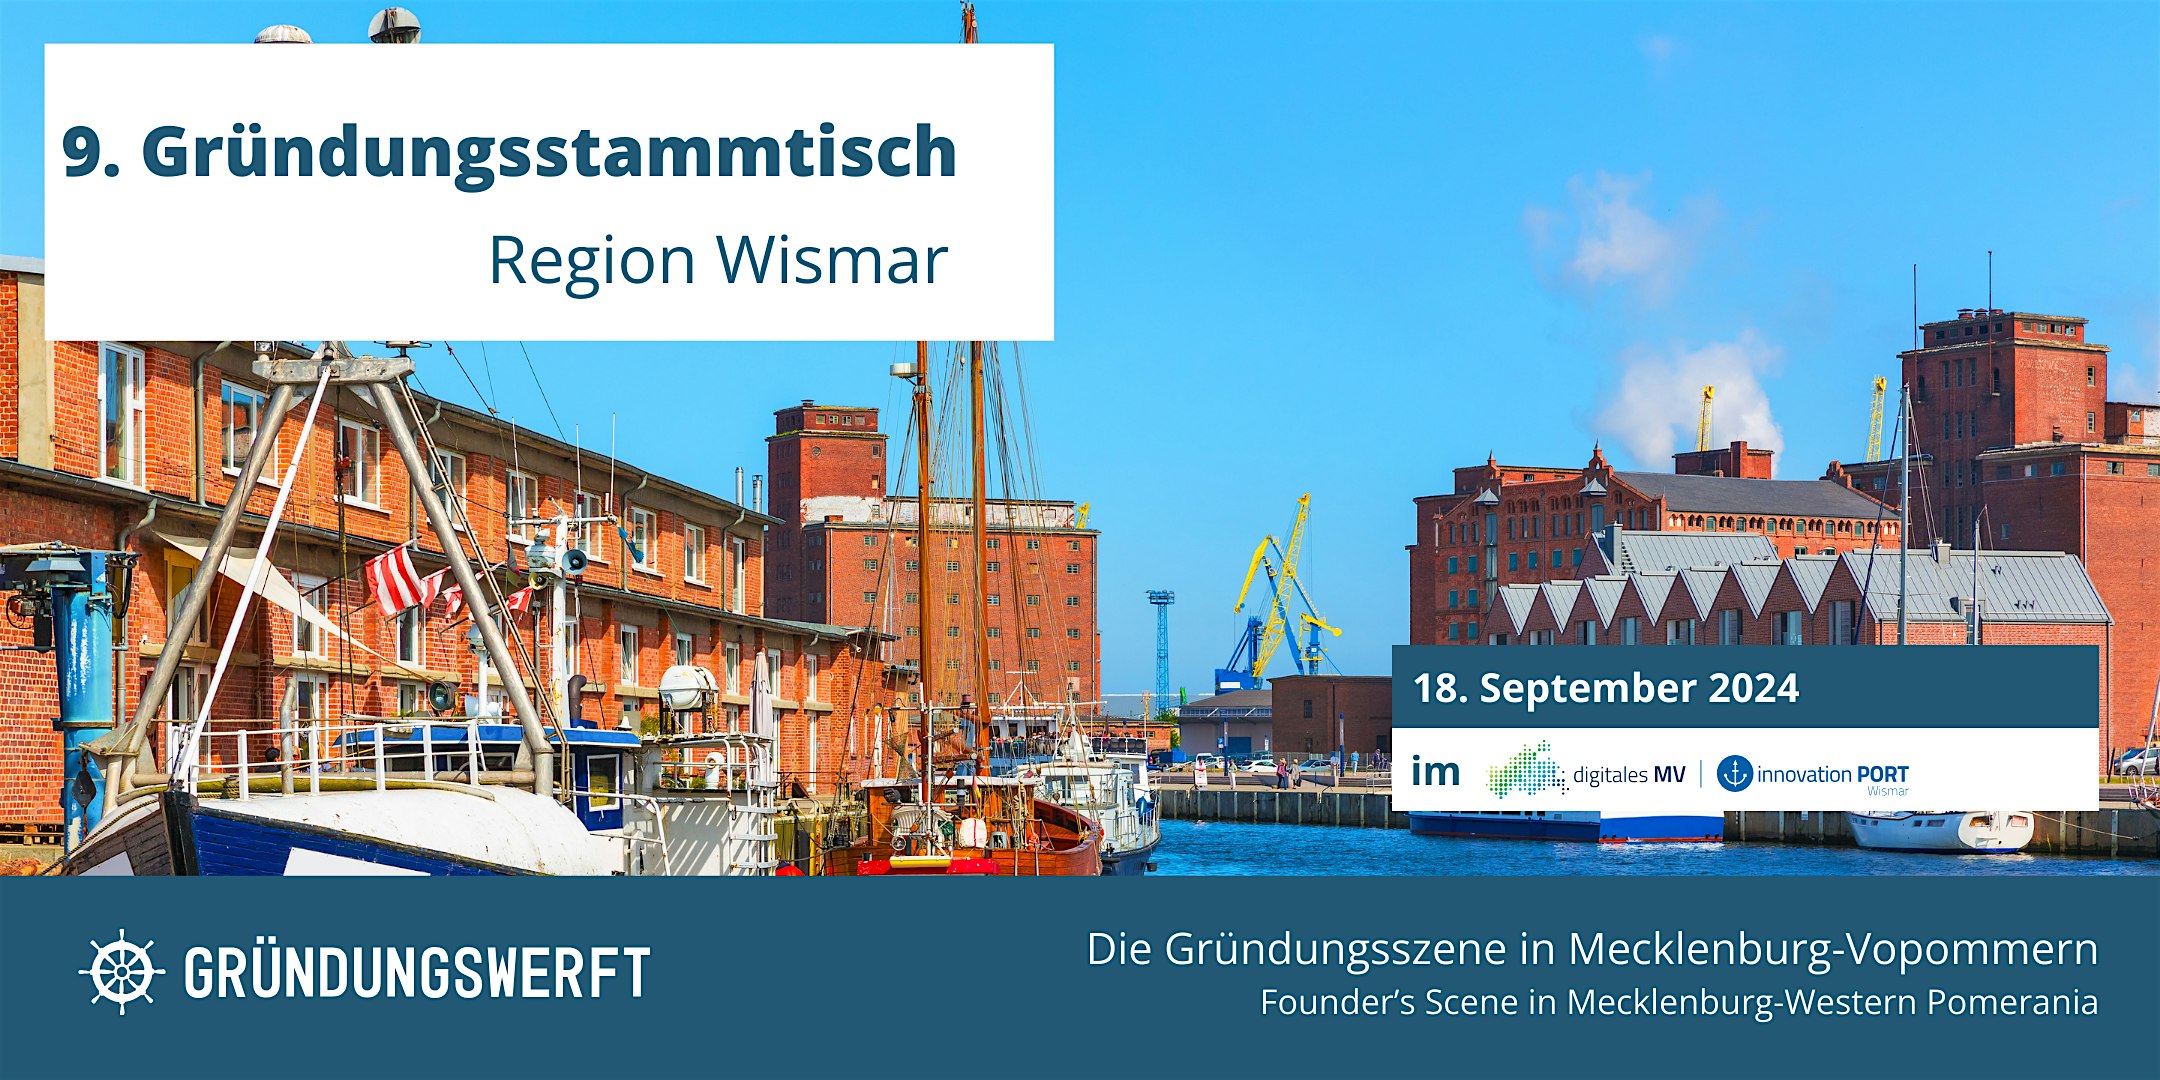 Veranstaltungsbild für die Veranstaltung 9. Gründungsstammtisch Region Wismar im Innovationport